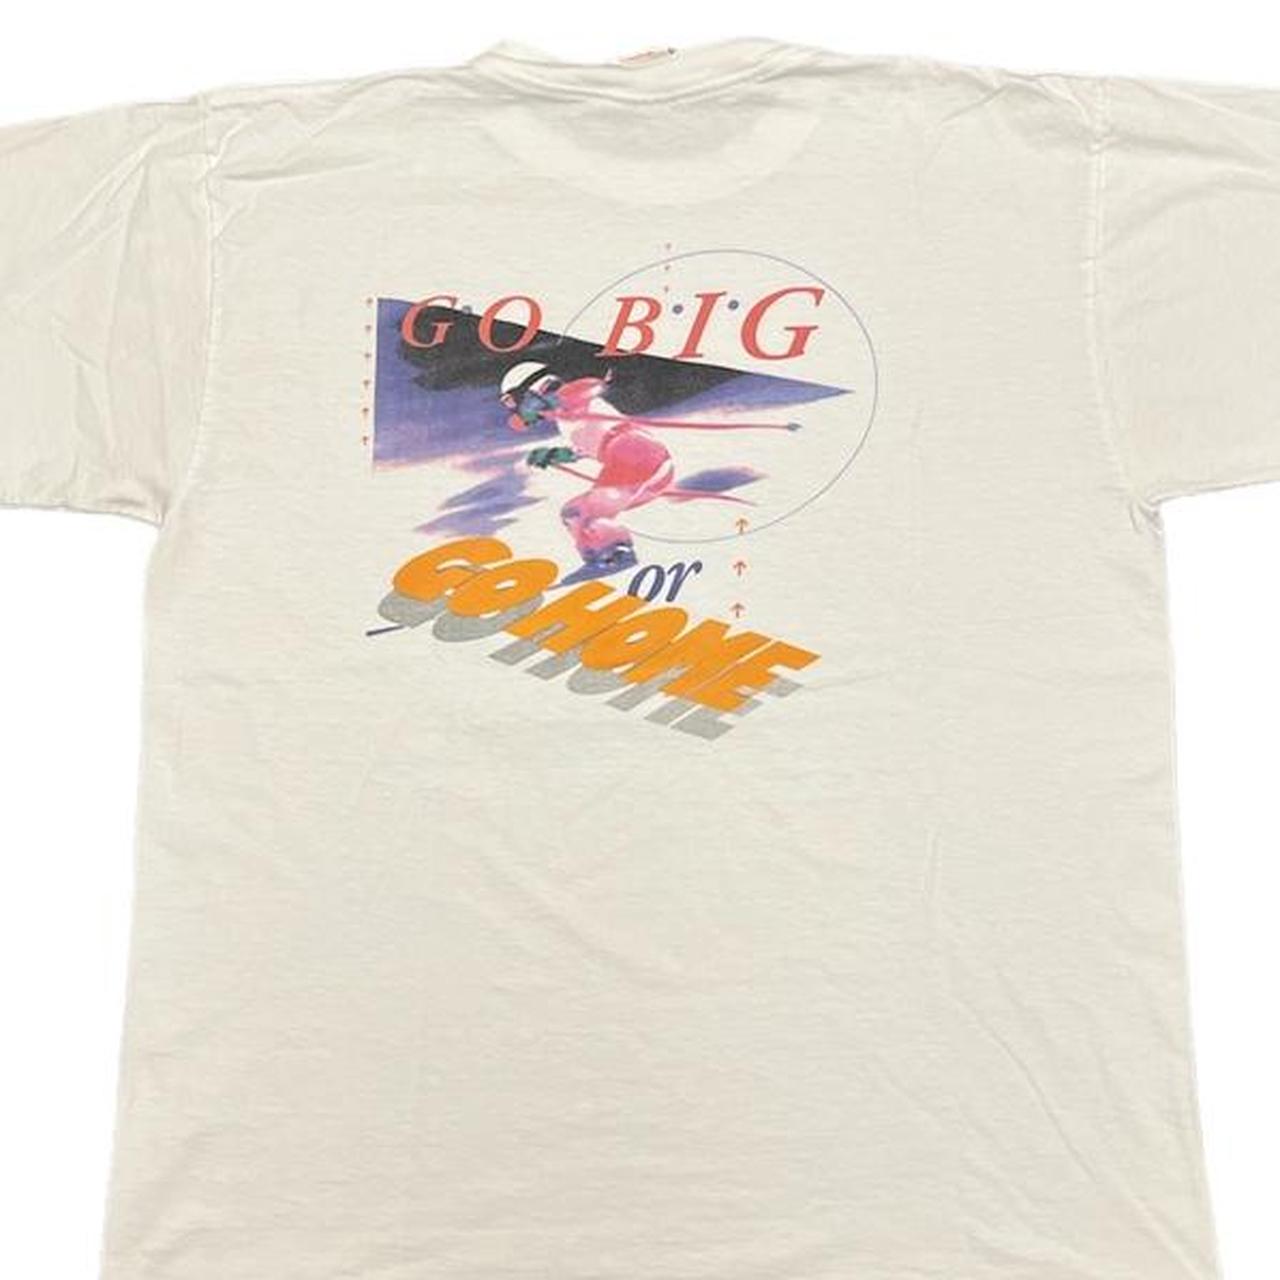 スペシャルヴィンテージ】90s USA製 “Ray-Ban” Tシャツ - トップス